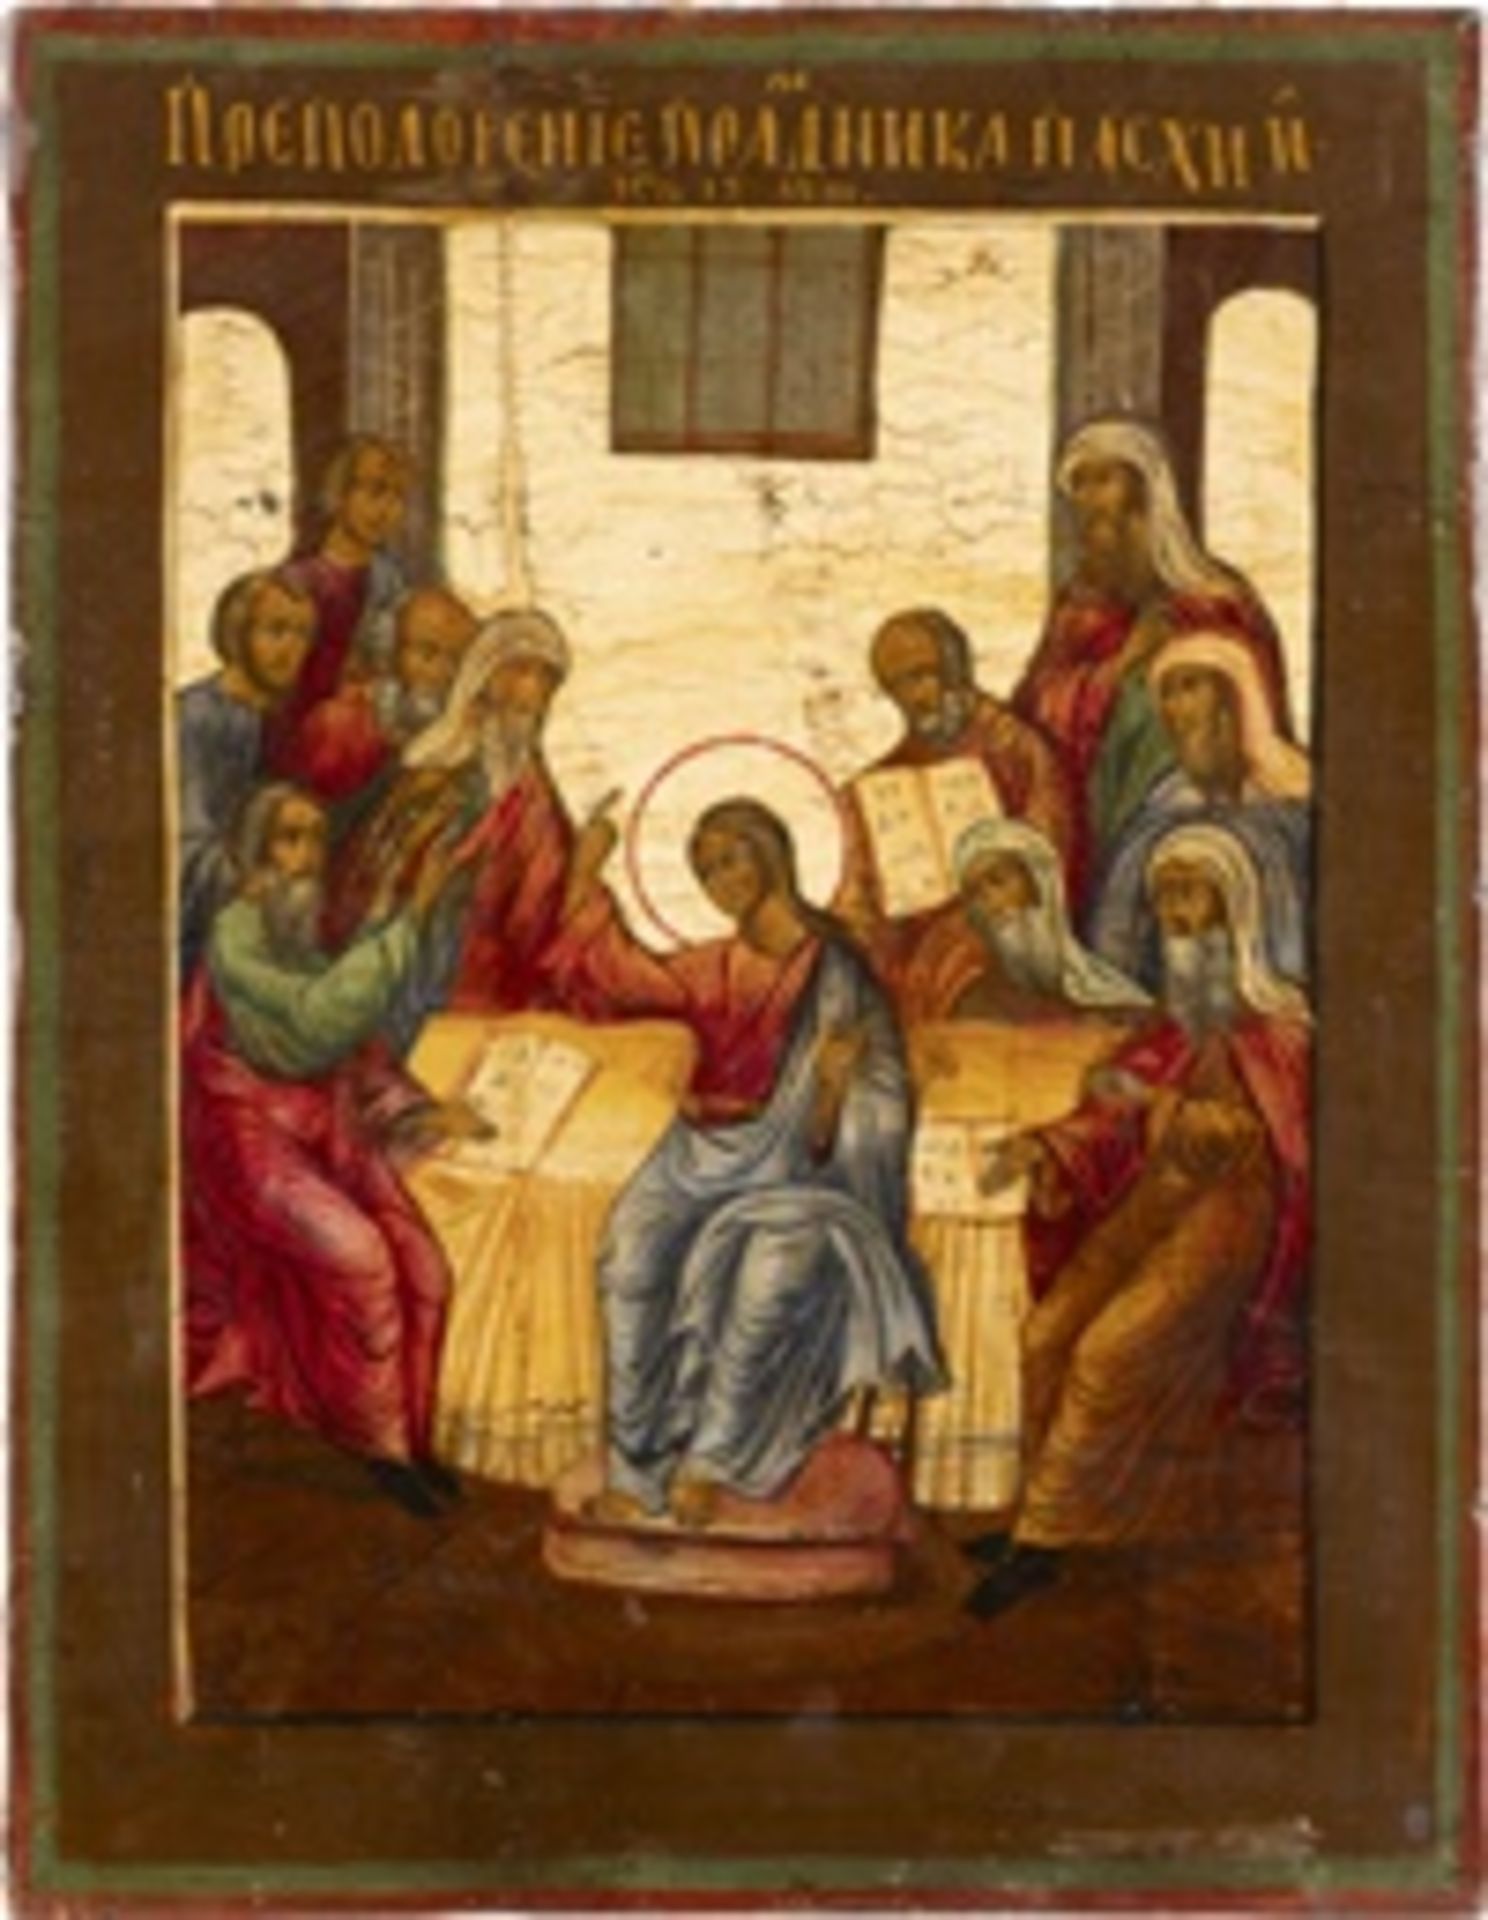 SELTENE IKONE MIT DEM ZWÖLFJÄHRIGEN CHRISTUS IM TEMPEL  - Bild 2 aus 3